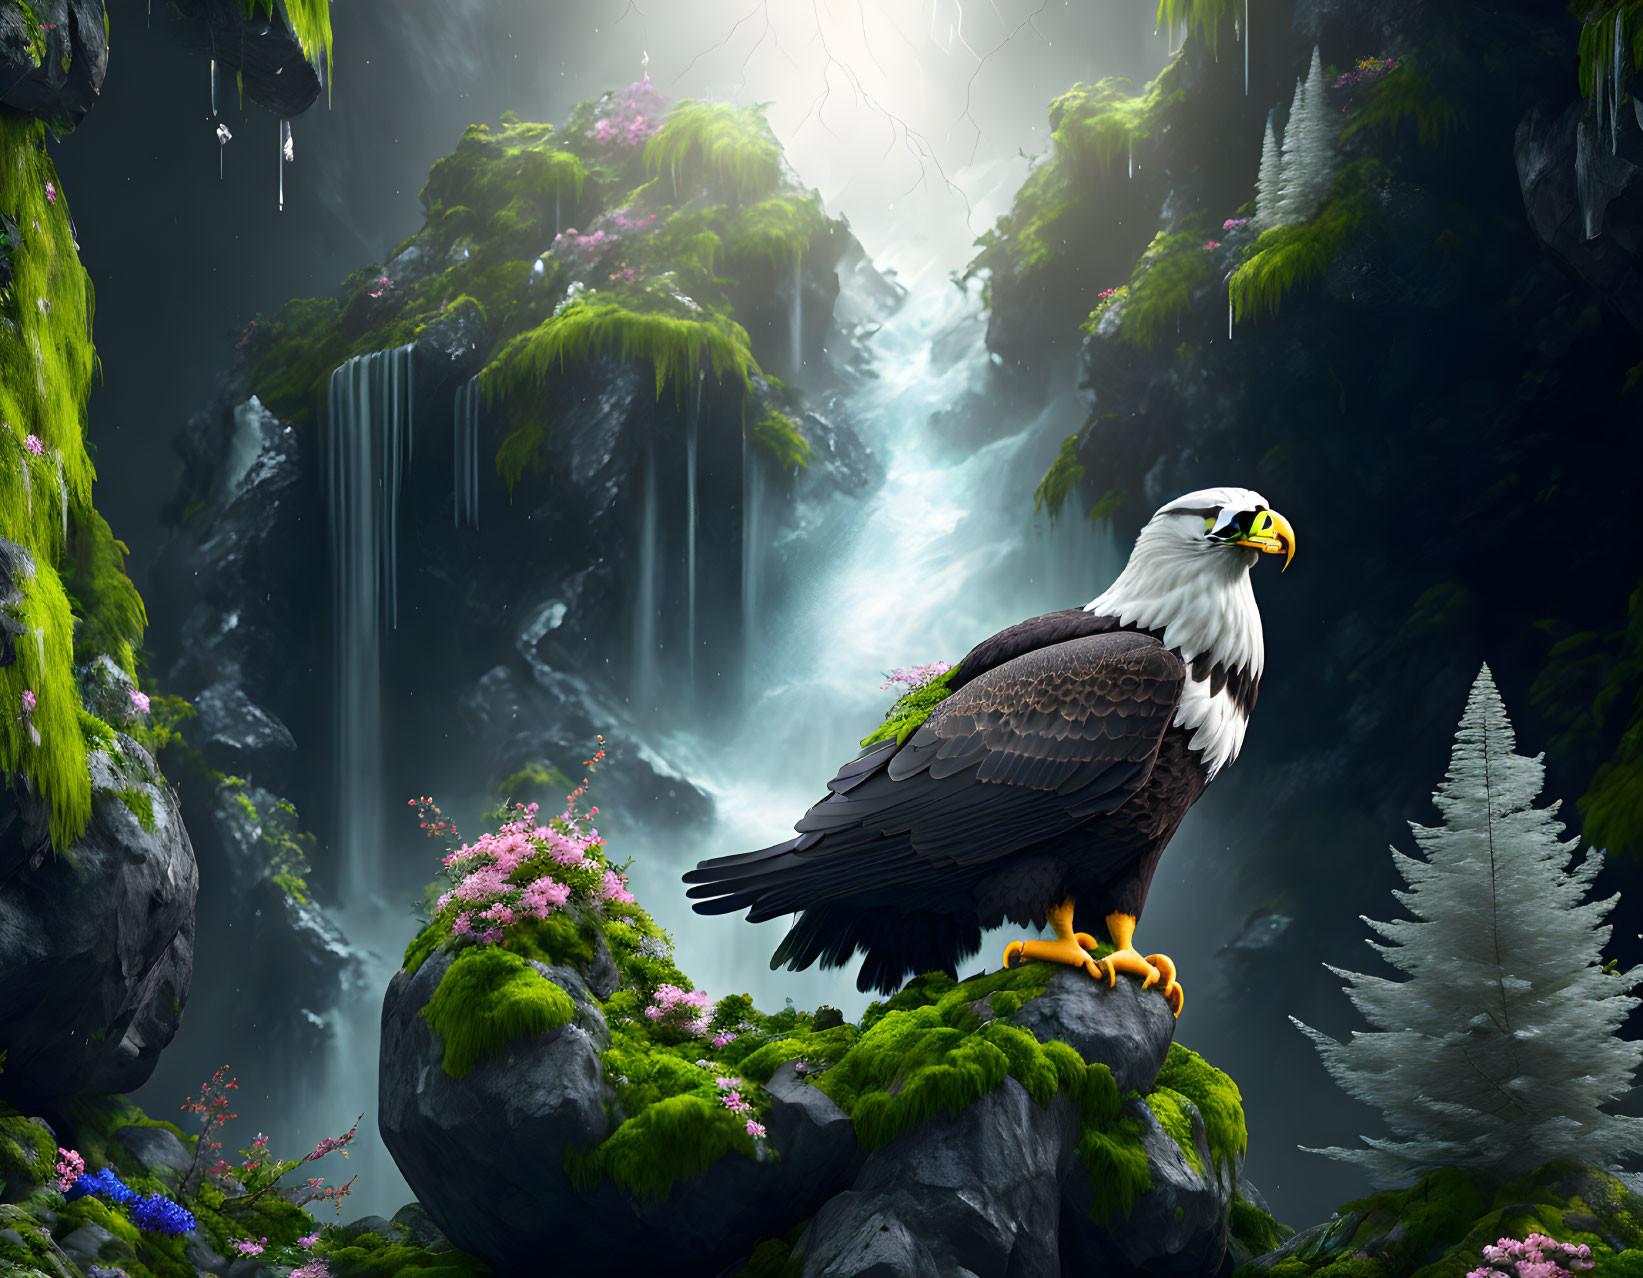 Bald eagle on rock in lush, misty landscape